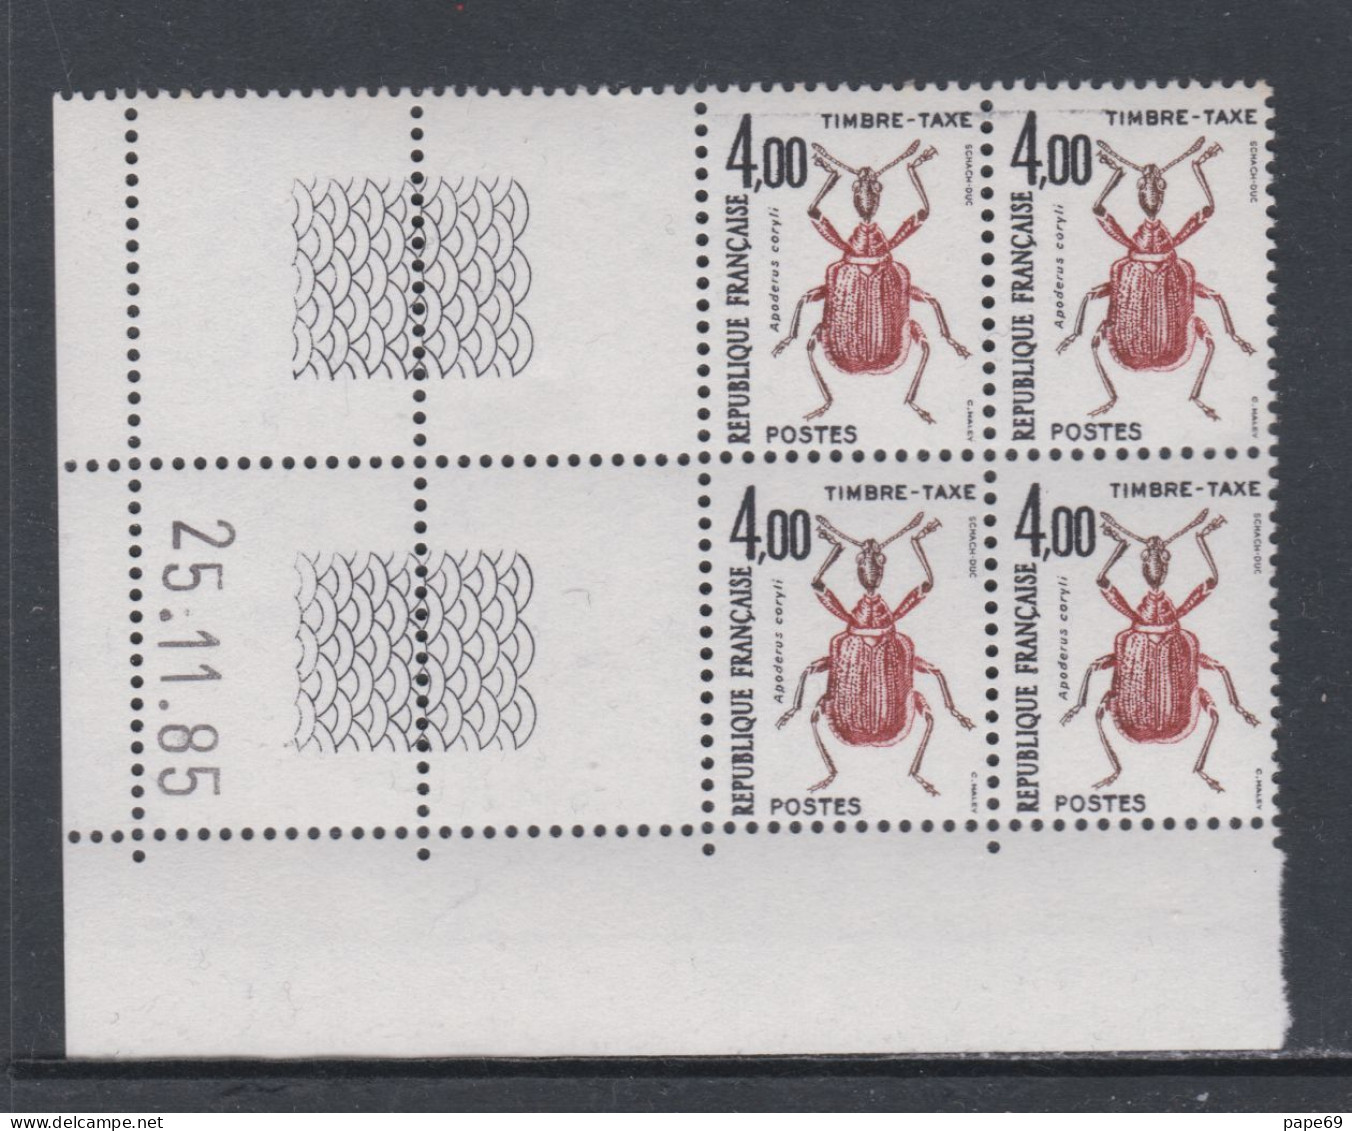 France Timbres-Taxe N° 108 XX Insectes : 4 F. Apoderus, En Bloc De 4 Coin Daté Du 25 . 11 . 85 ; Sans Trait, Ss Ch. TB - Impuestos